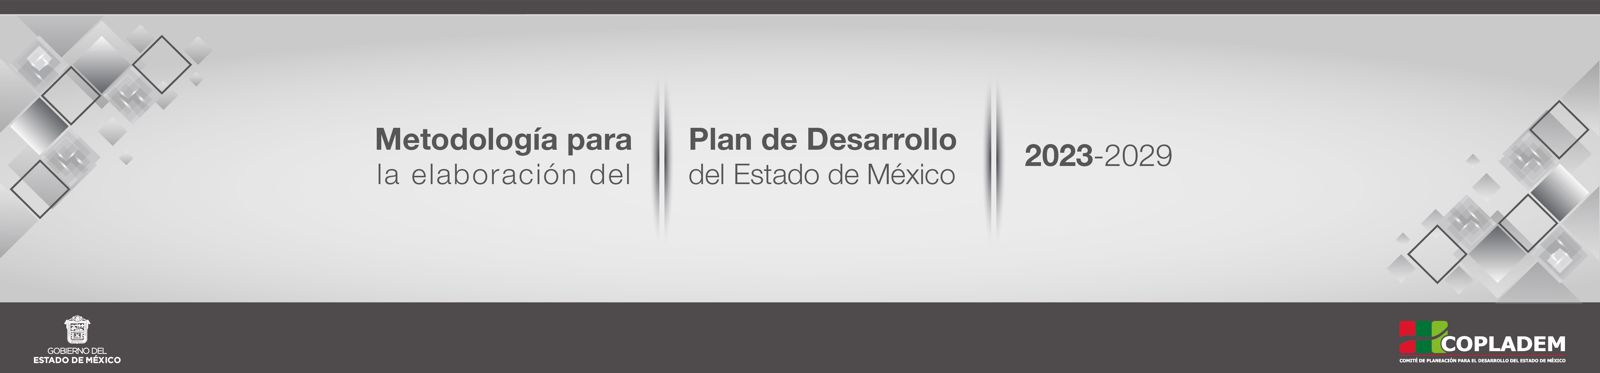 Metodología para la Elaboración del Plan de Desarrollo del Estado de México 2023 - 2029